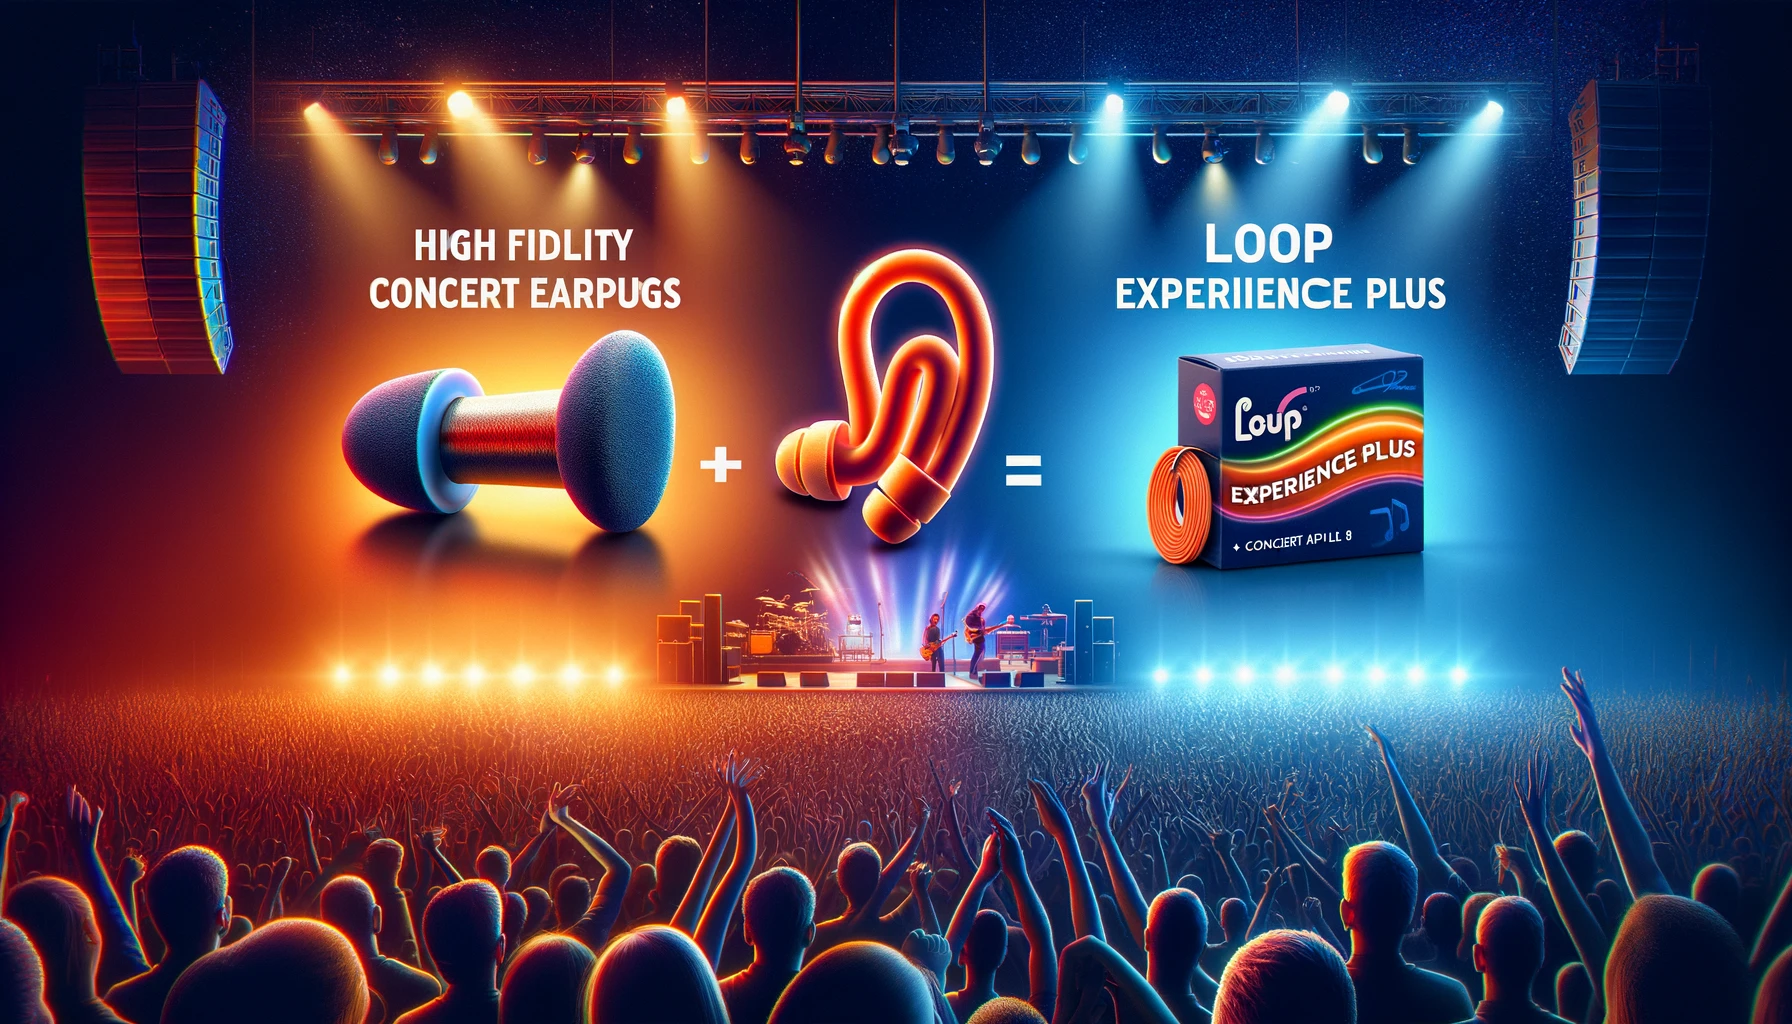 音楽家とライブ愛好者のための最適選択: Mumba高忠実度コンサート耳栓vs Loop Experience Plusイヤプラグ比較レビュー